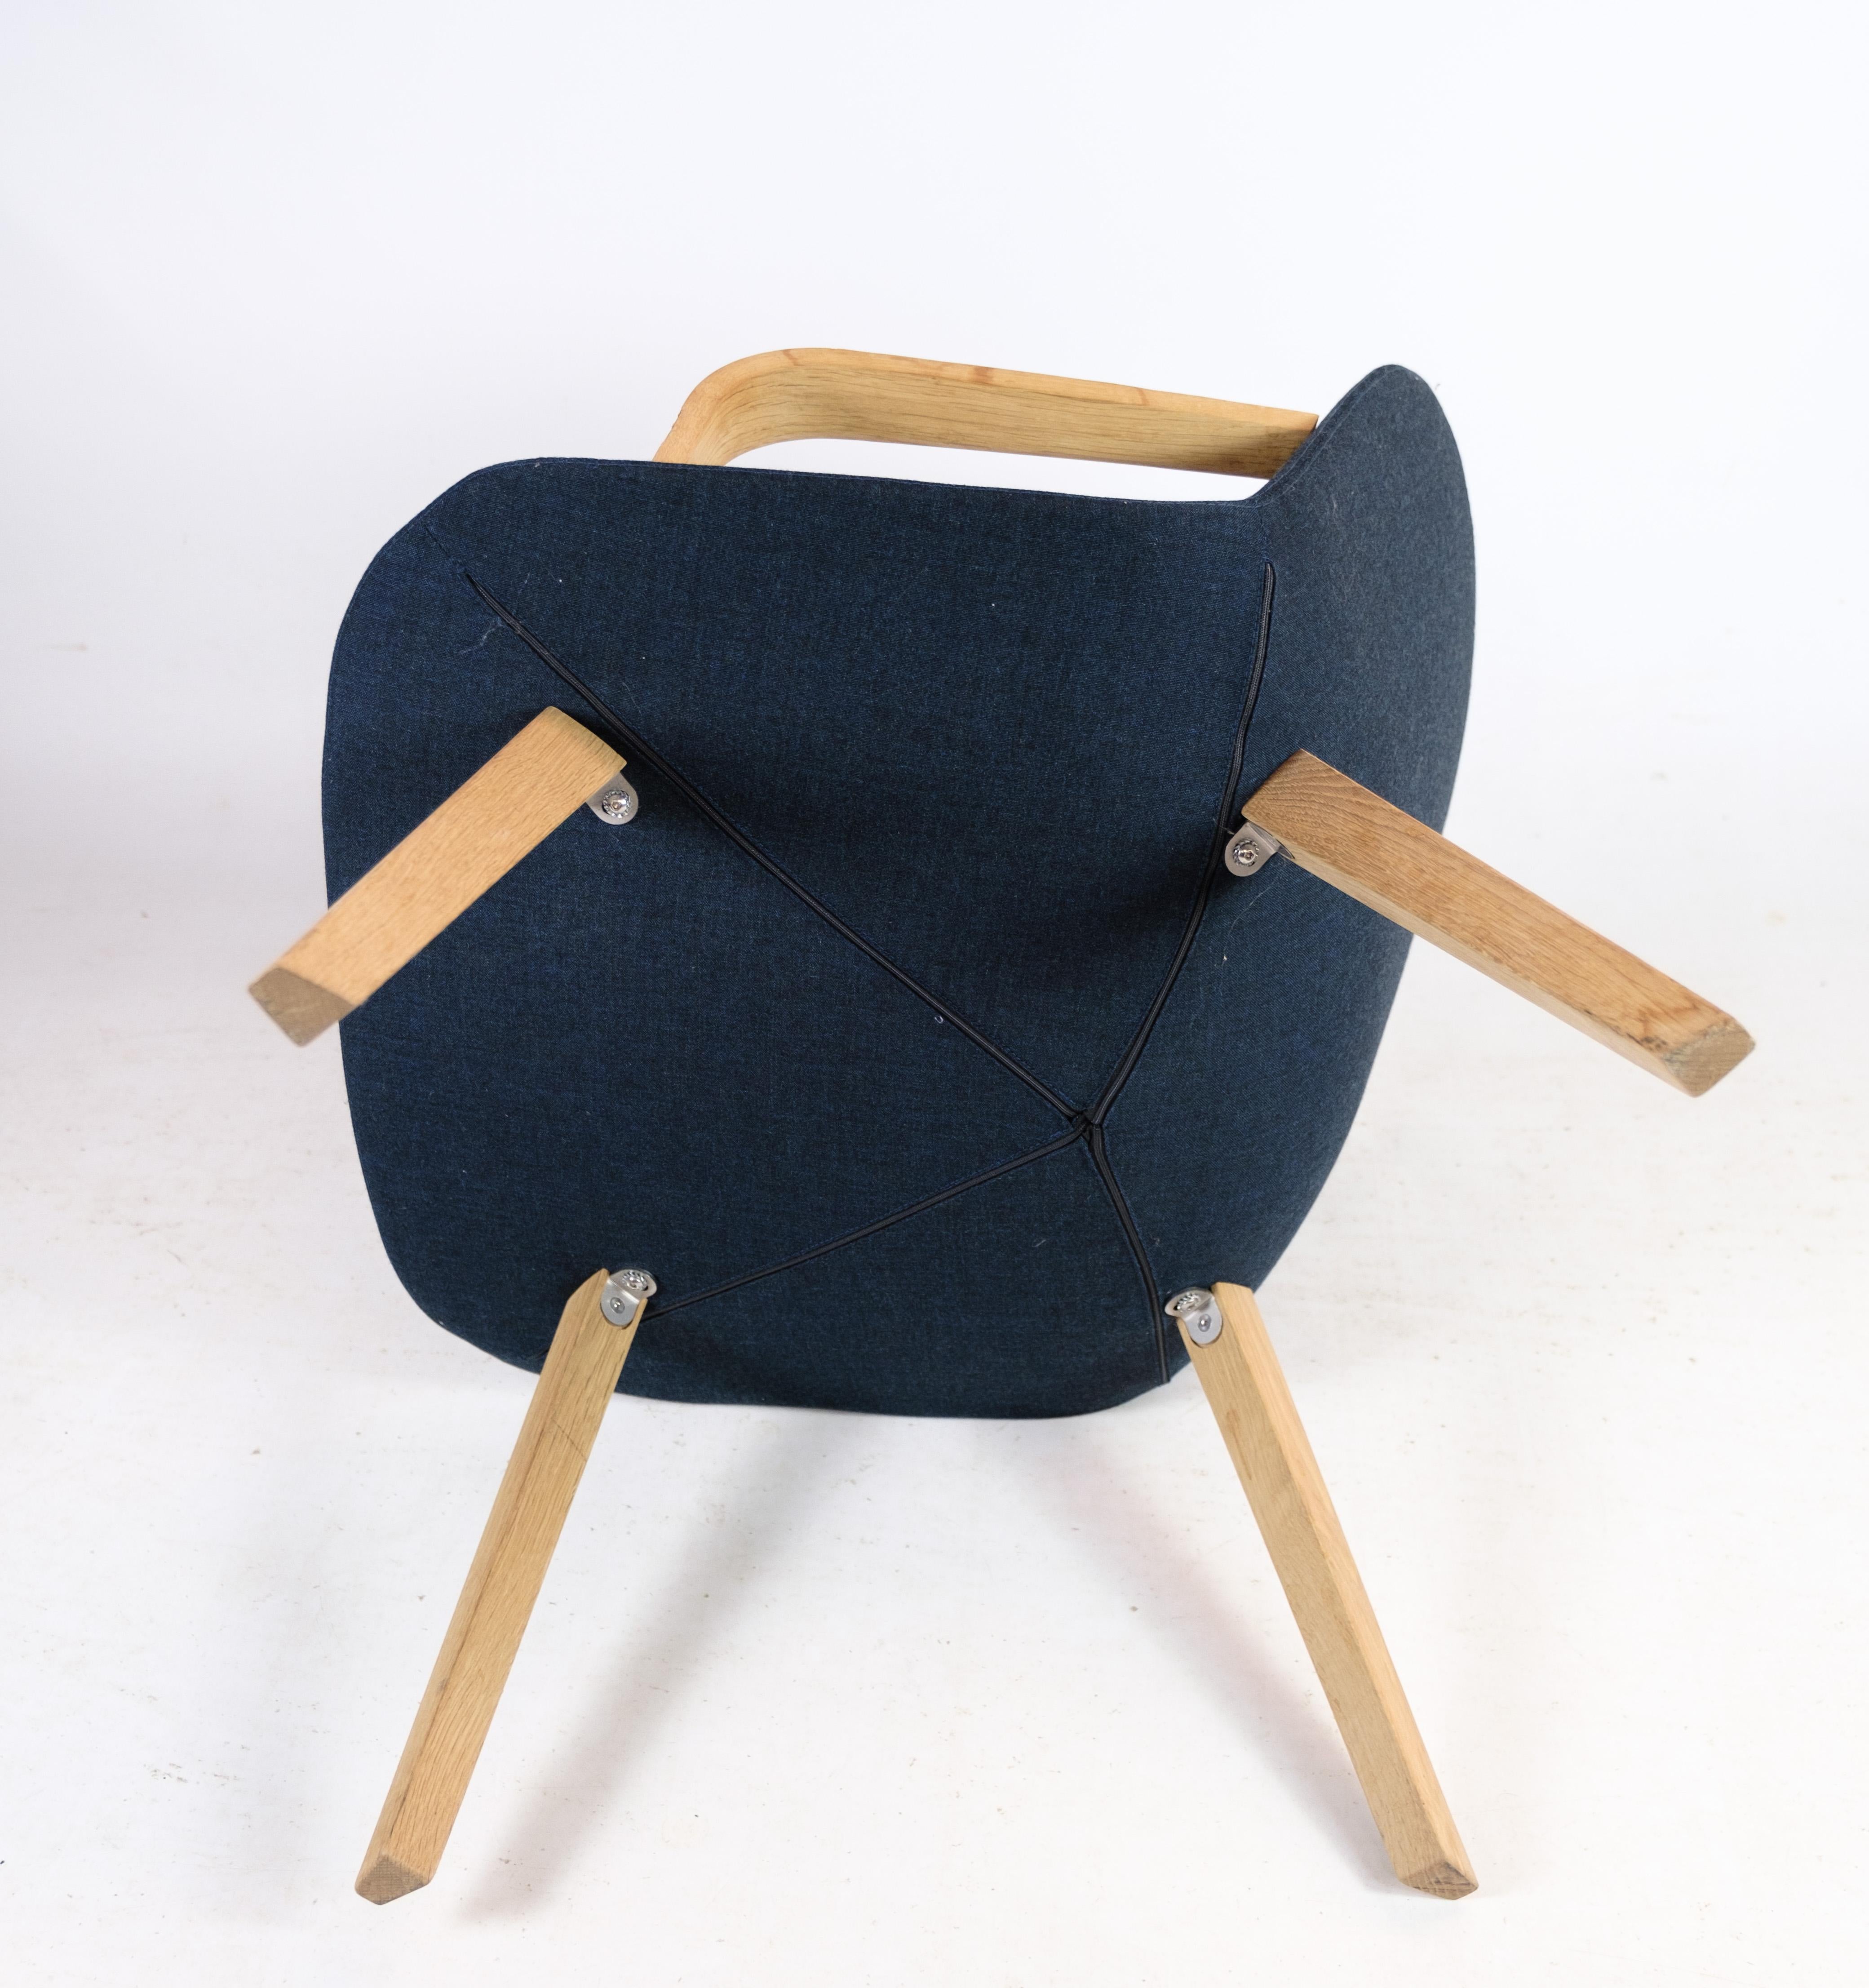 Der Loungesessel, Modell EJ 3, wurde von Erik Jørgensen sorgfältig aus Eichenholz gefertigt und mit einem luxuriösen blauen Wollstoff bezogen, der zur geschätzten Eyes-Serie gehört. Dieser exquisite Sessel verbindet nahtlos modernes Design mit